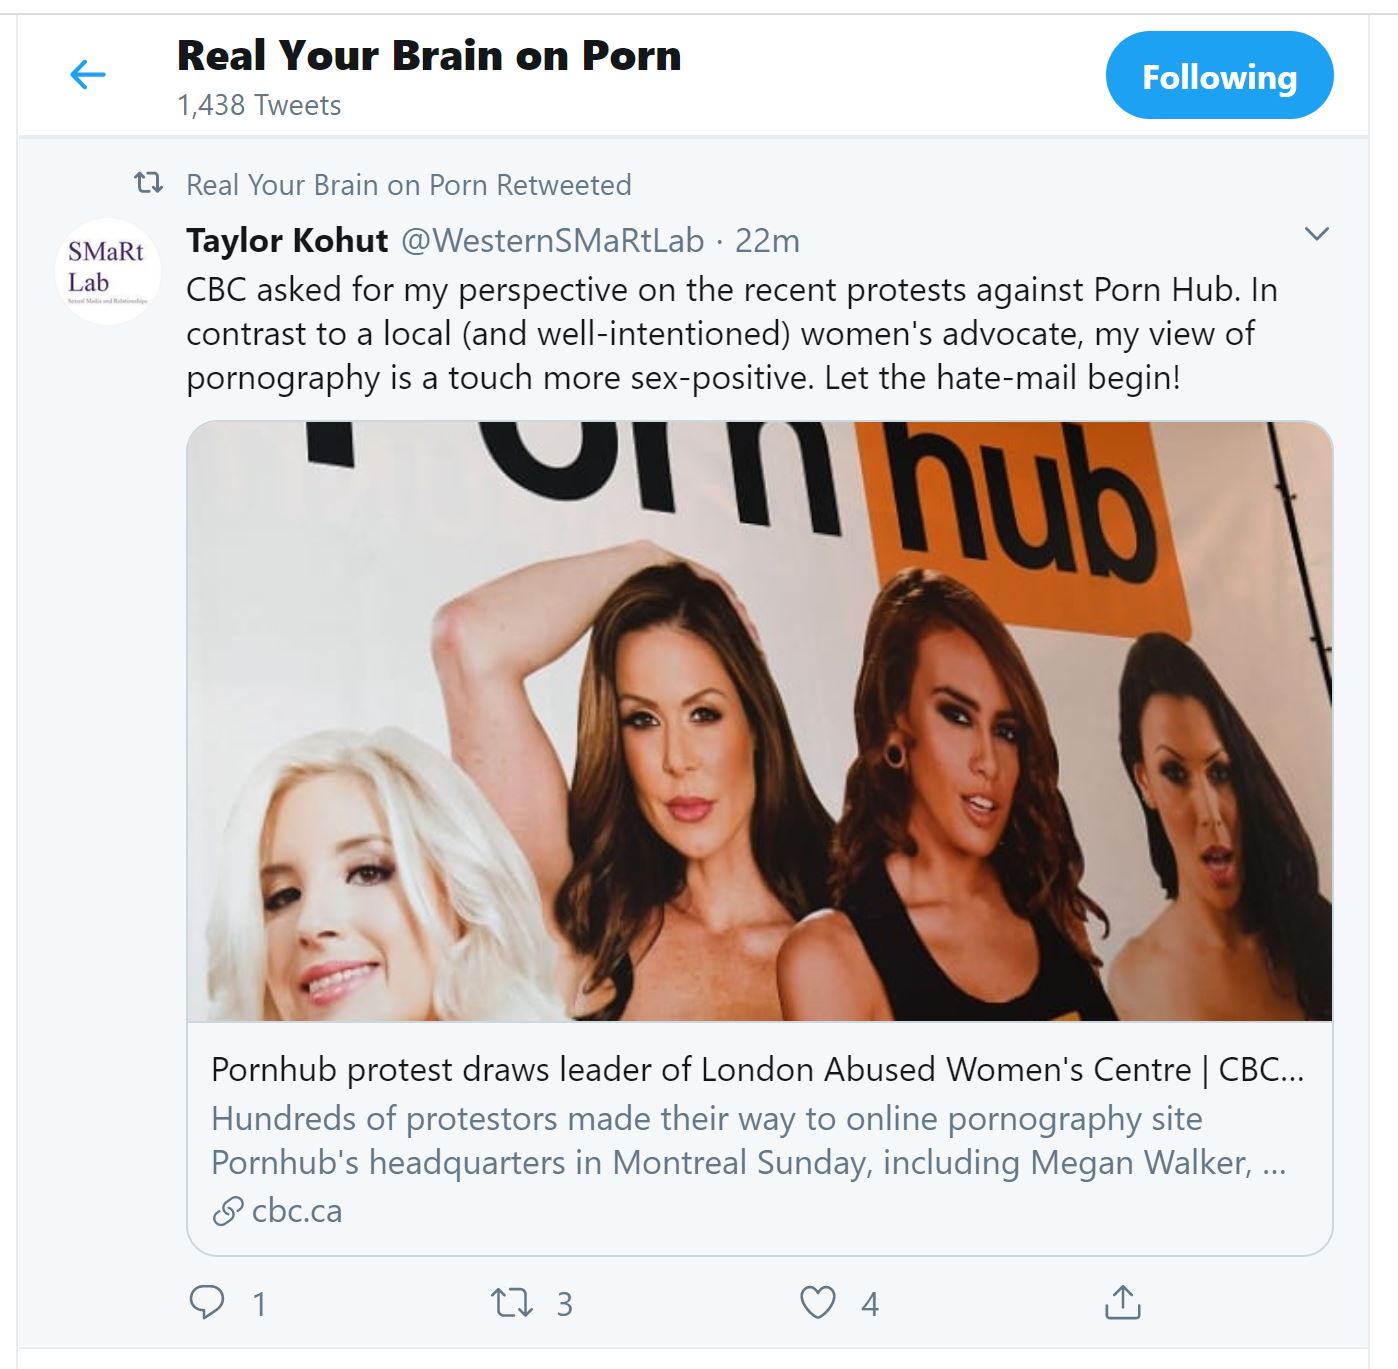 Is Nicole Prause BeÃ¯nvloed deur die porno-industrie? - Jou brein ...